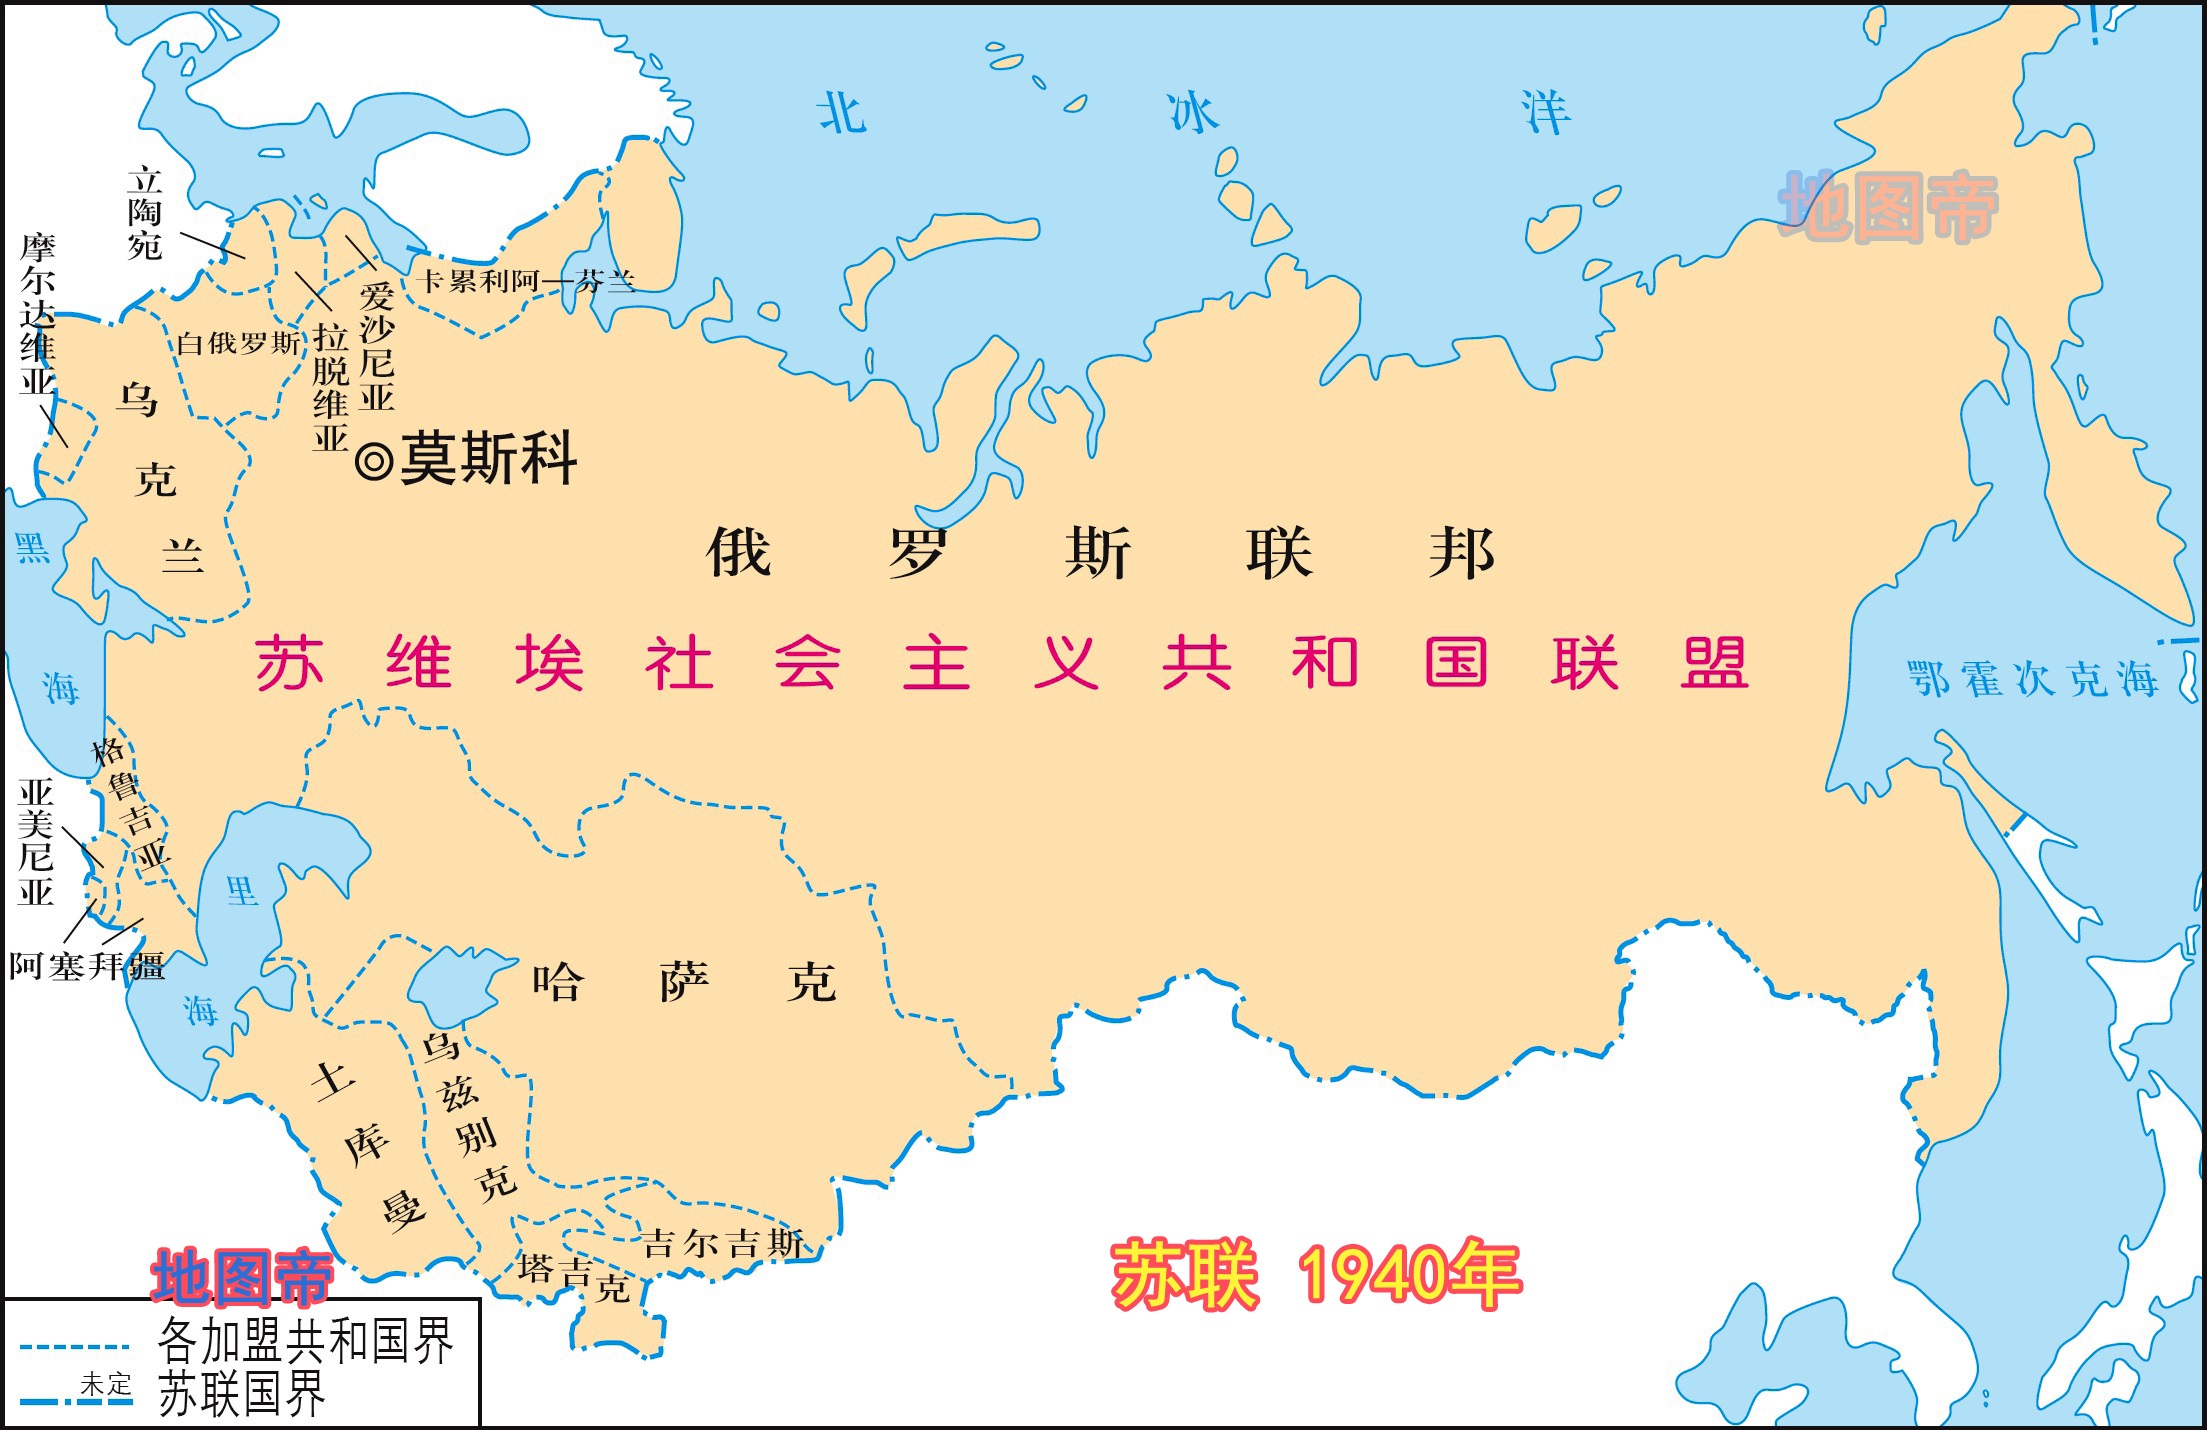 圣彼得堡地图(列宁格勒)|圣彼得堡地图(列宁格勒)全图高清版大图片|旅途风景图片网|www.visacits.com